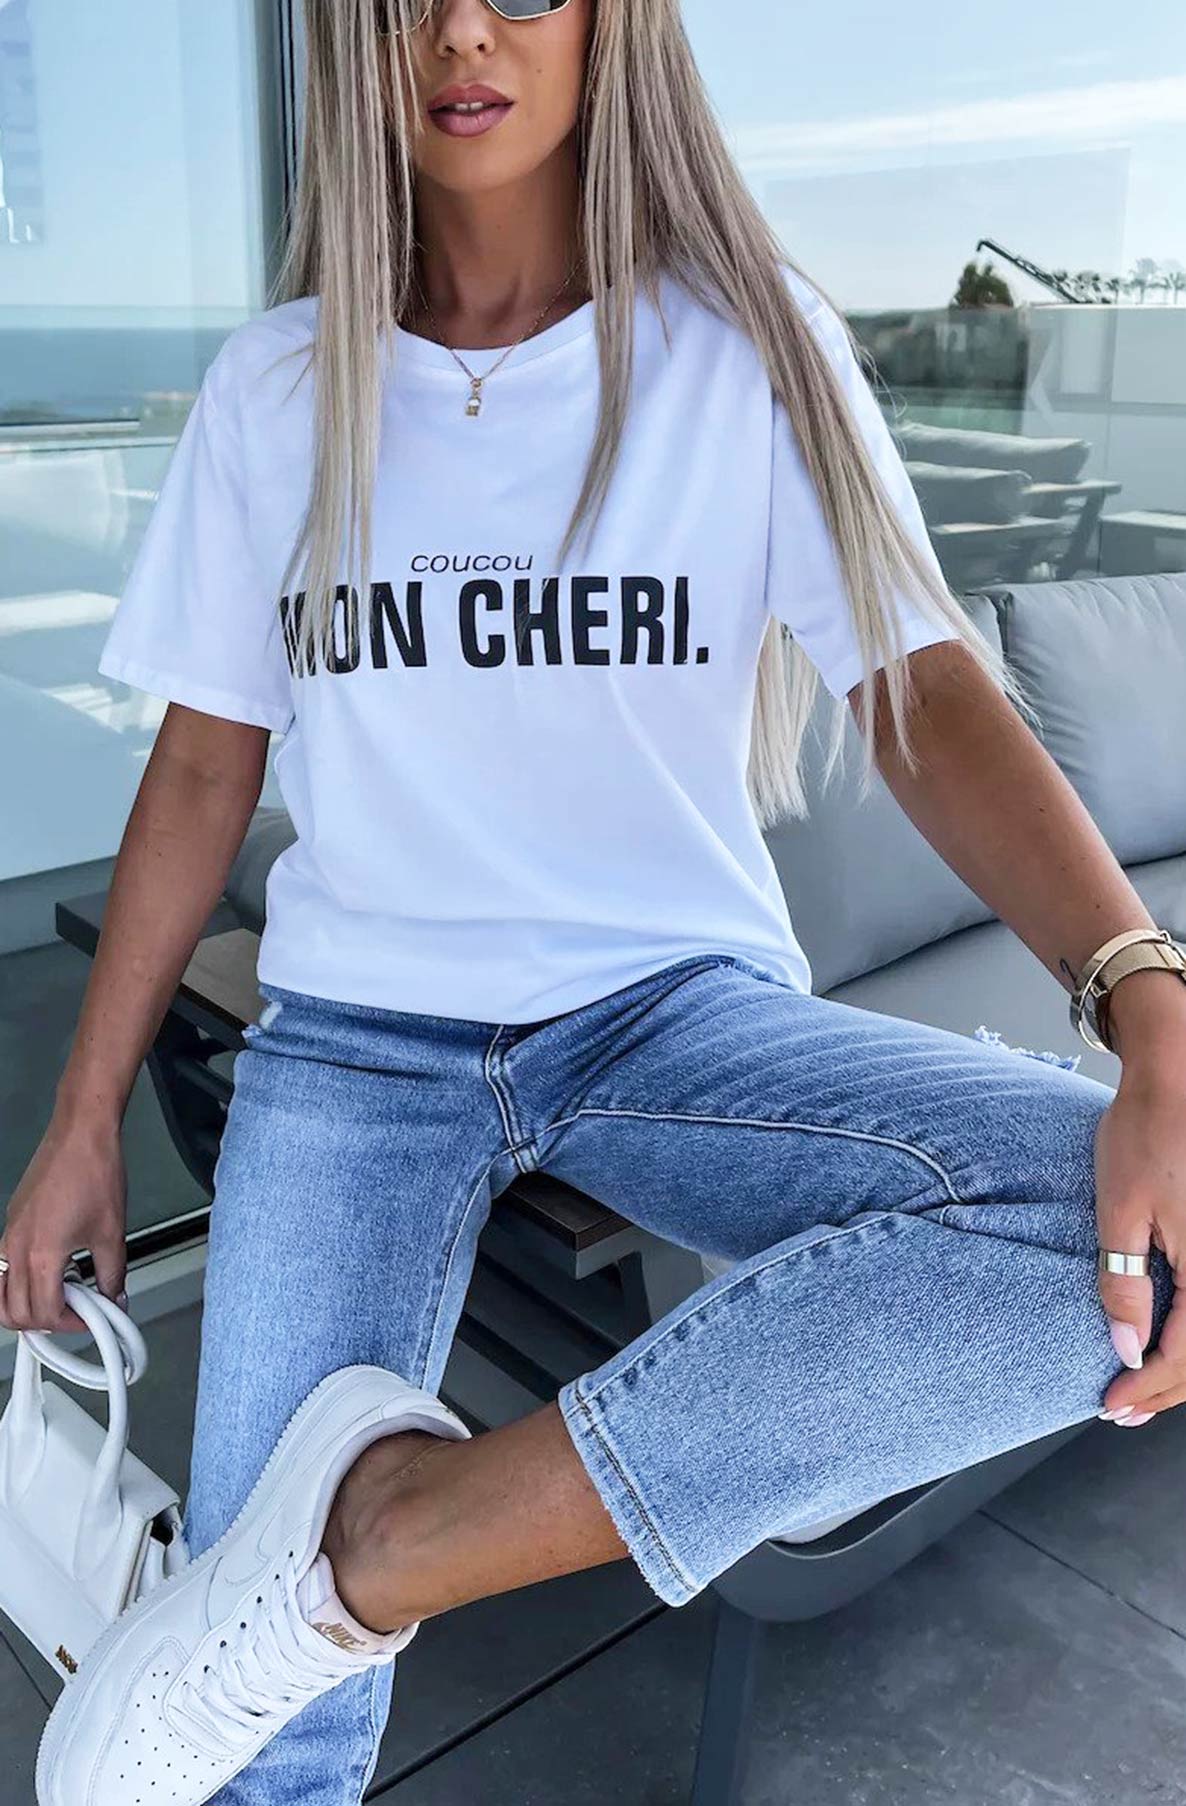 'Mon Cheri' Printed T-shirt Top